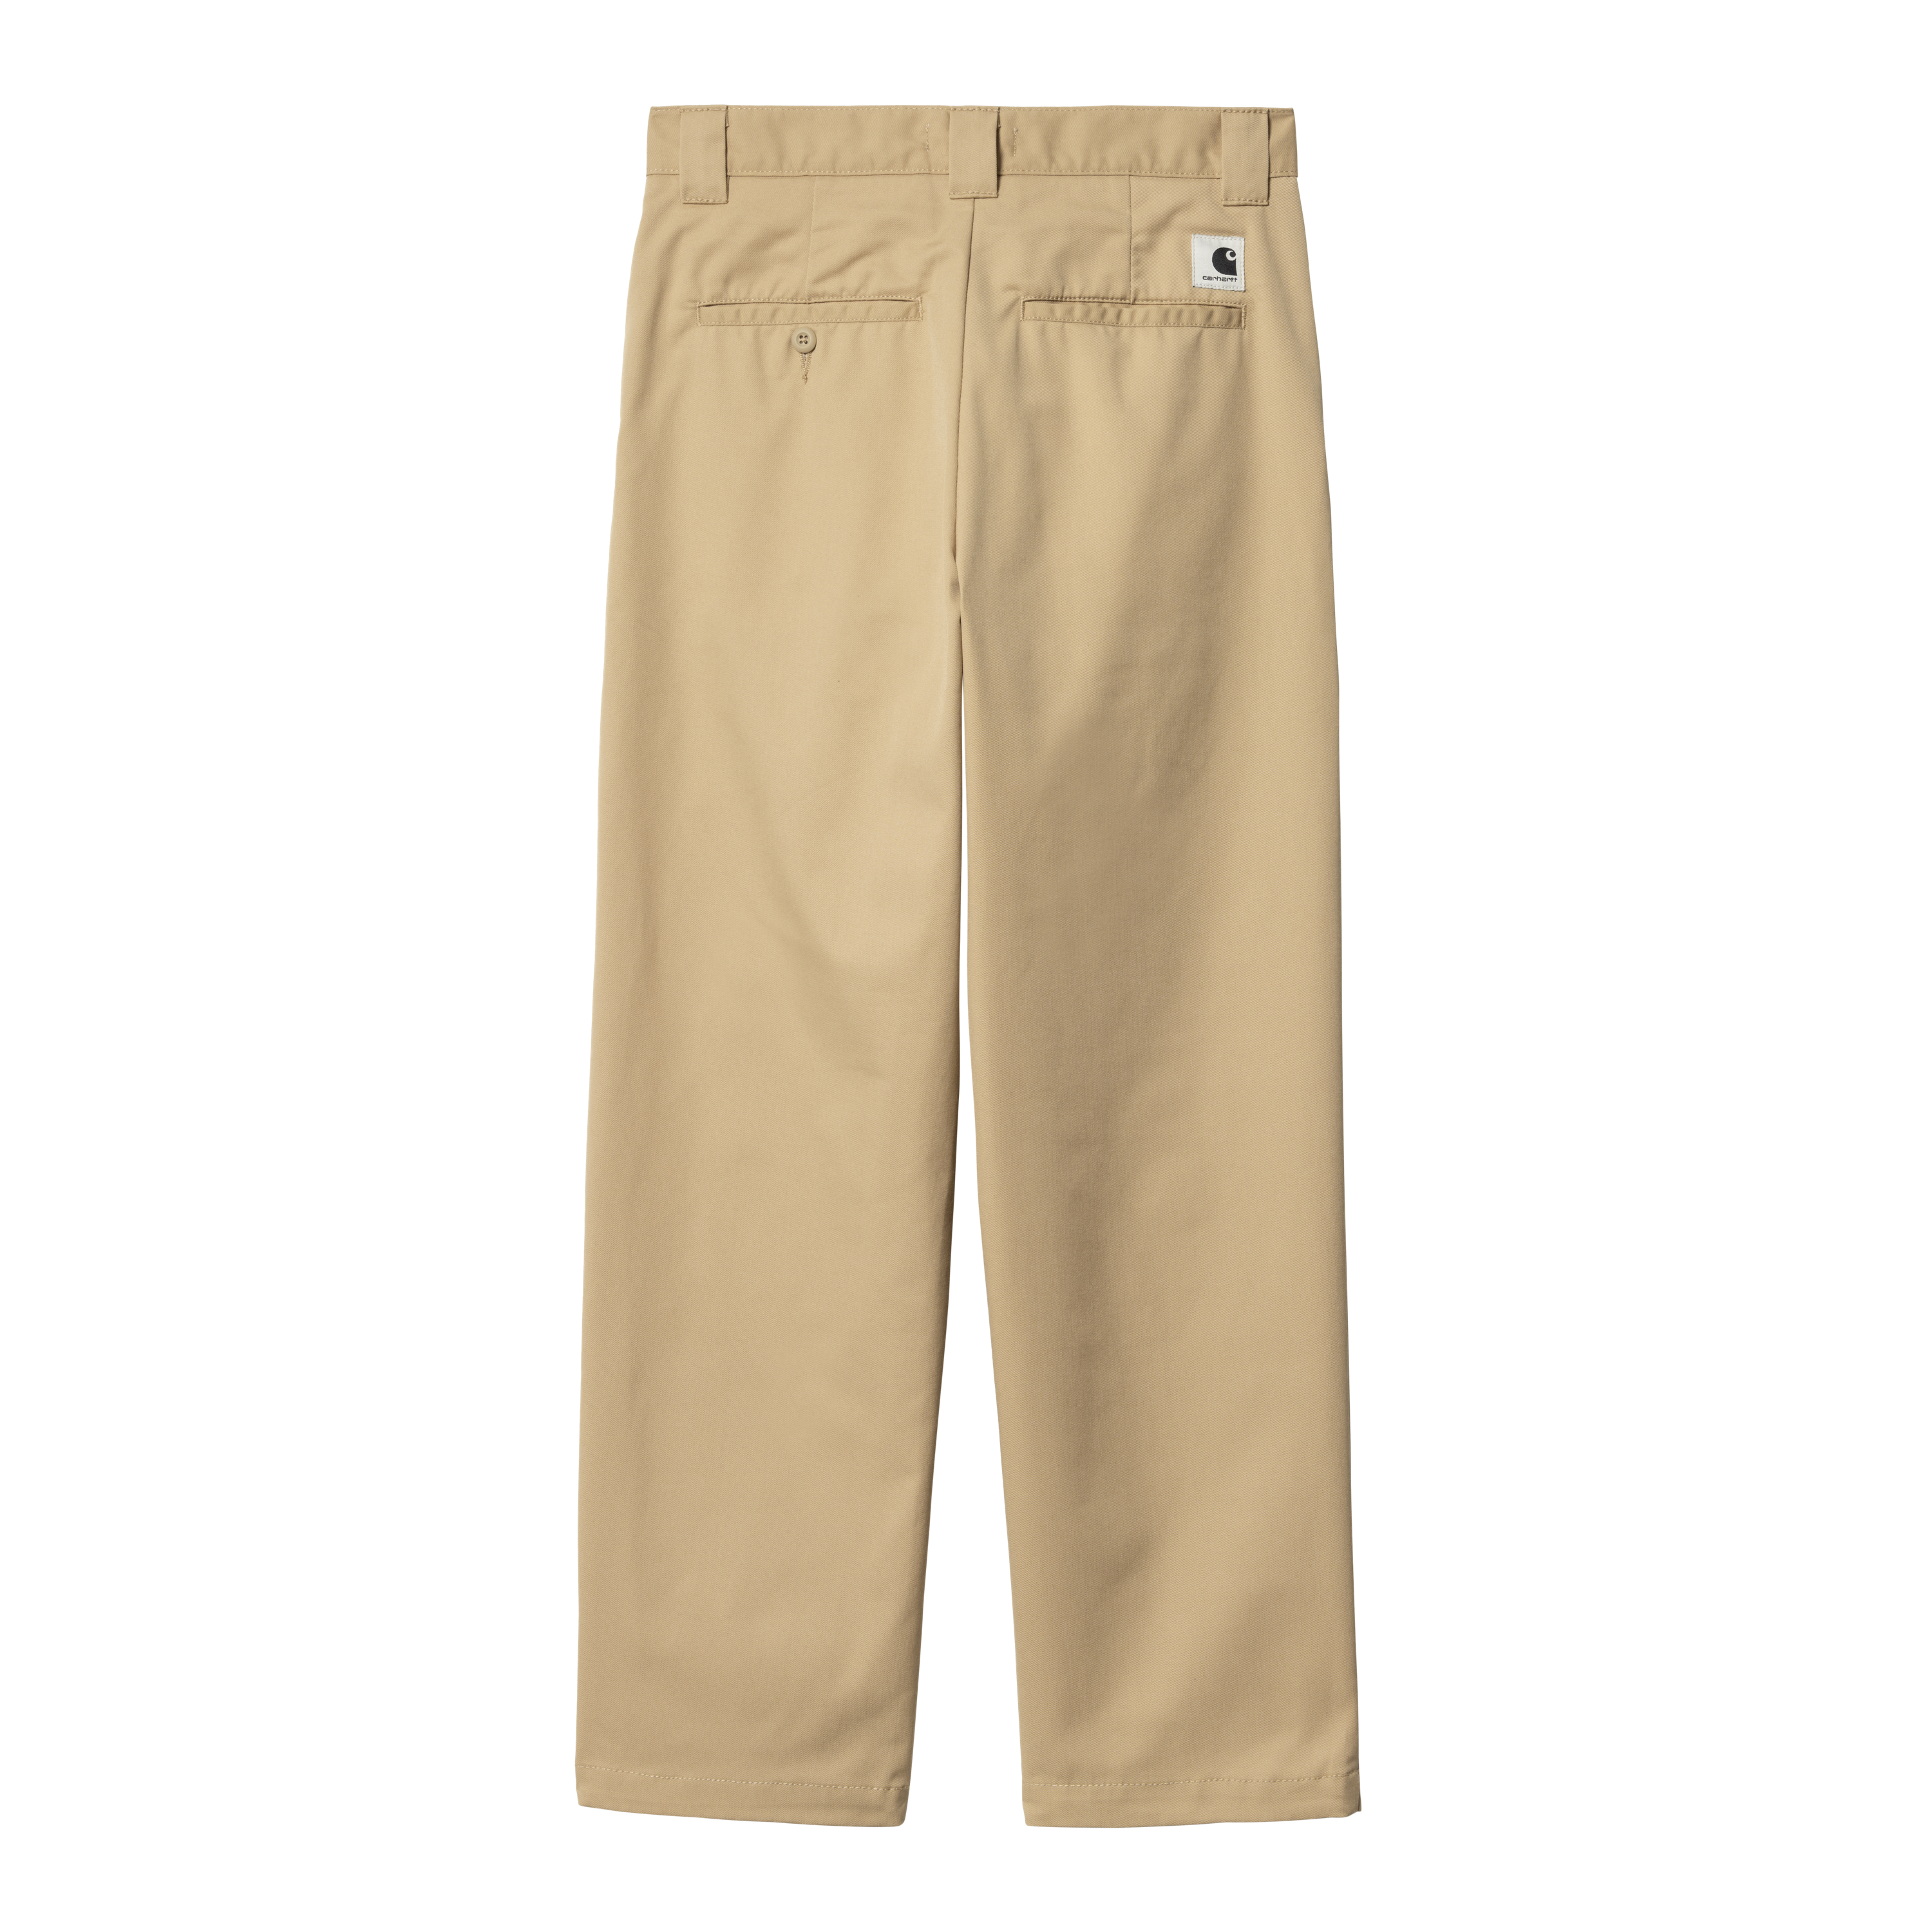 Carhartt WIP medley utility trousers in dusty beige